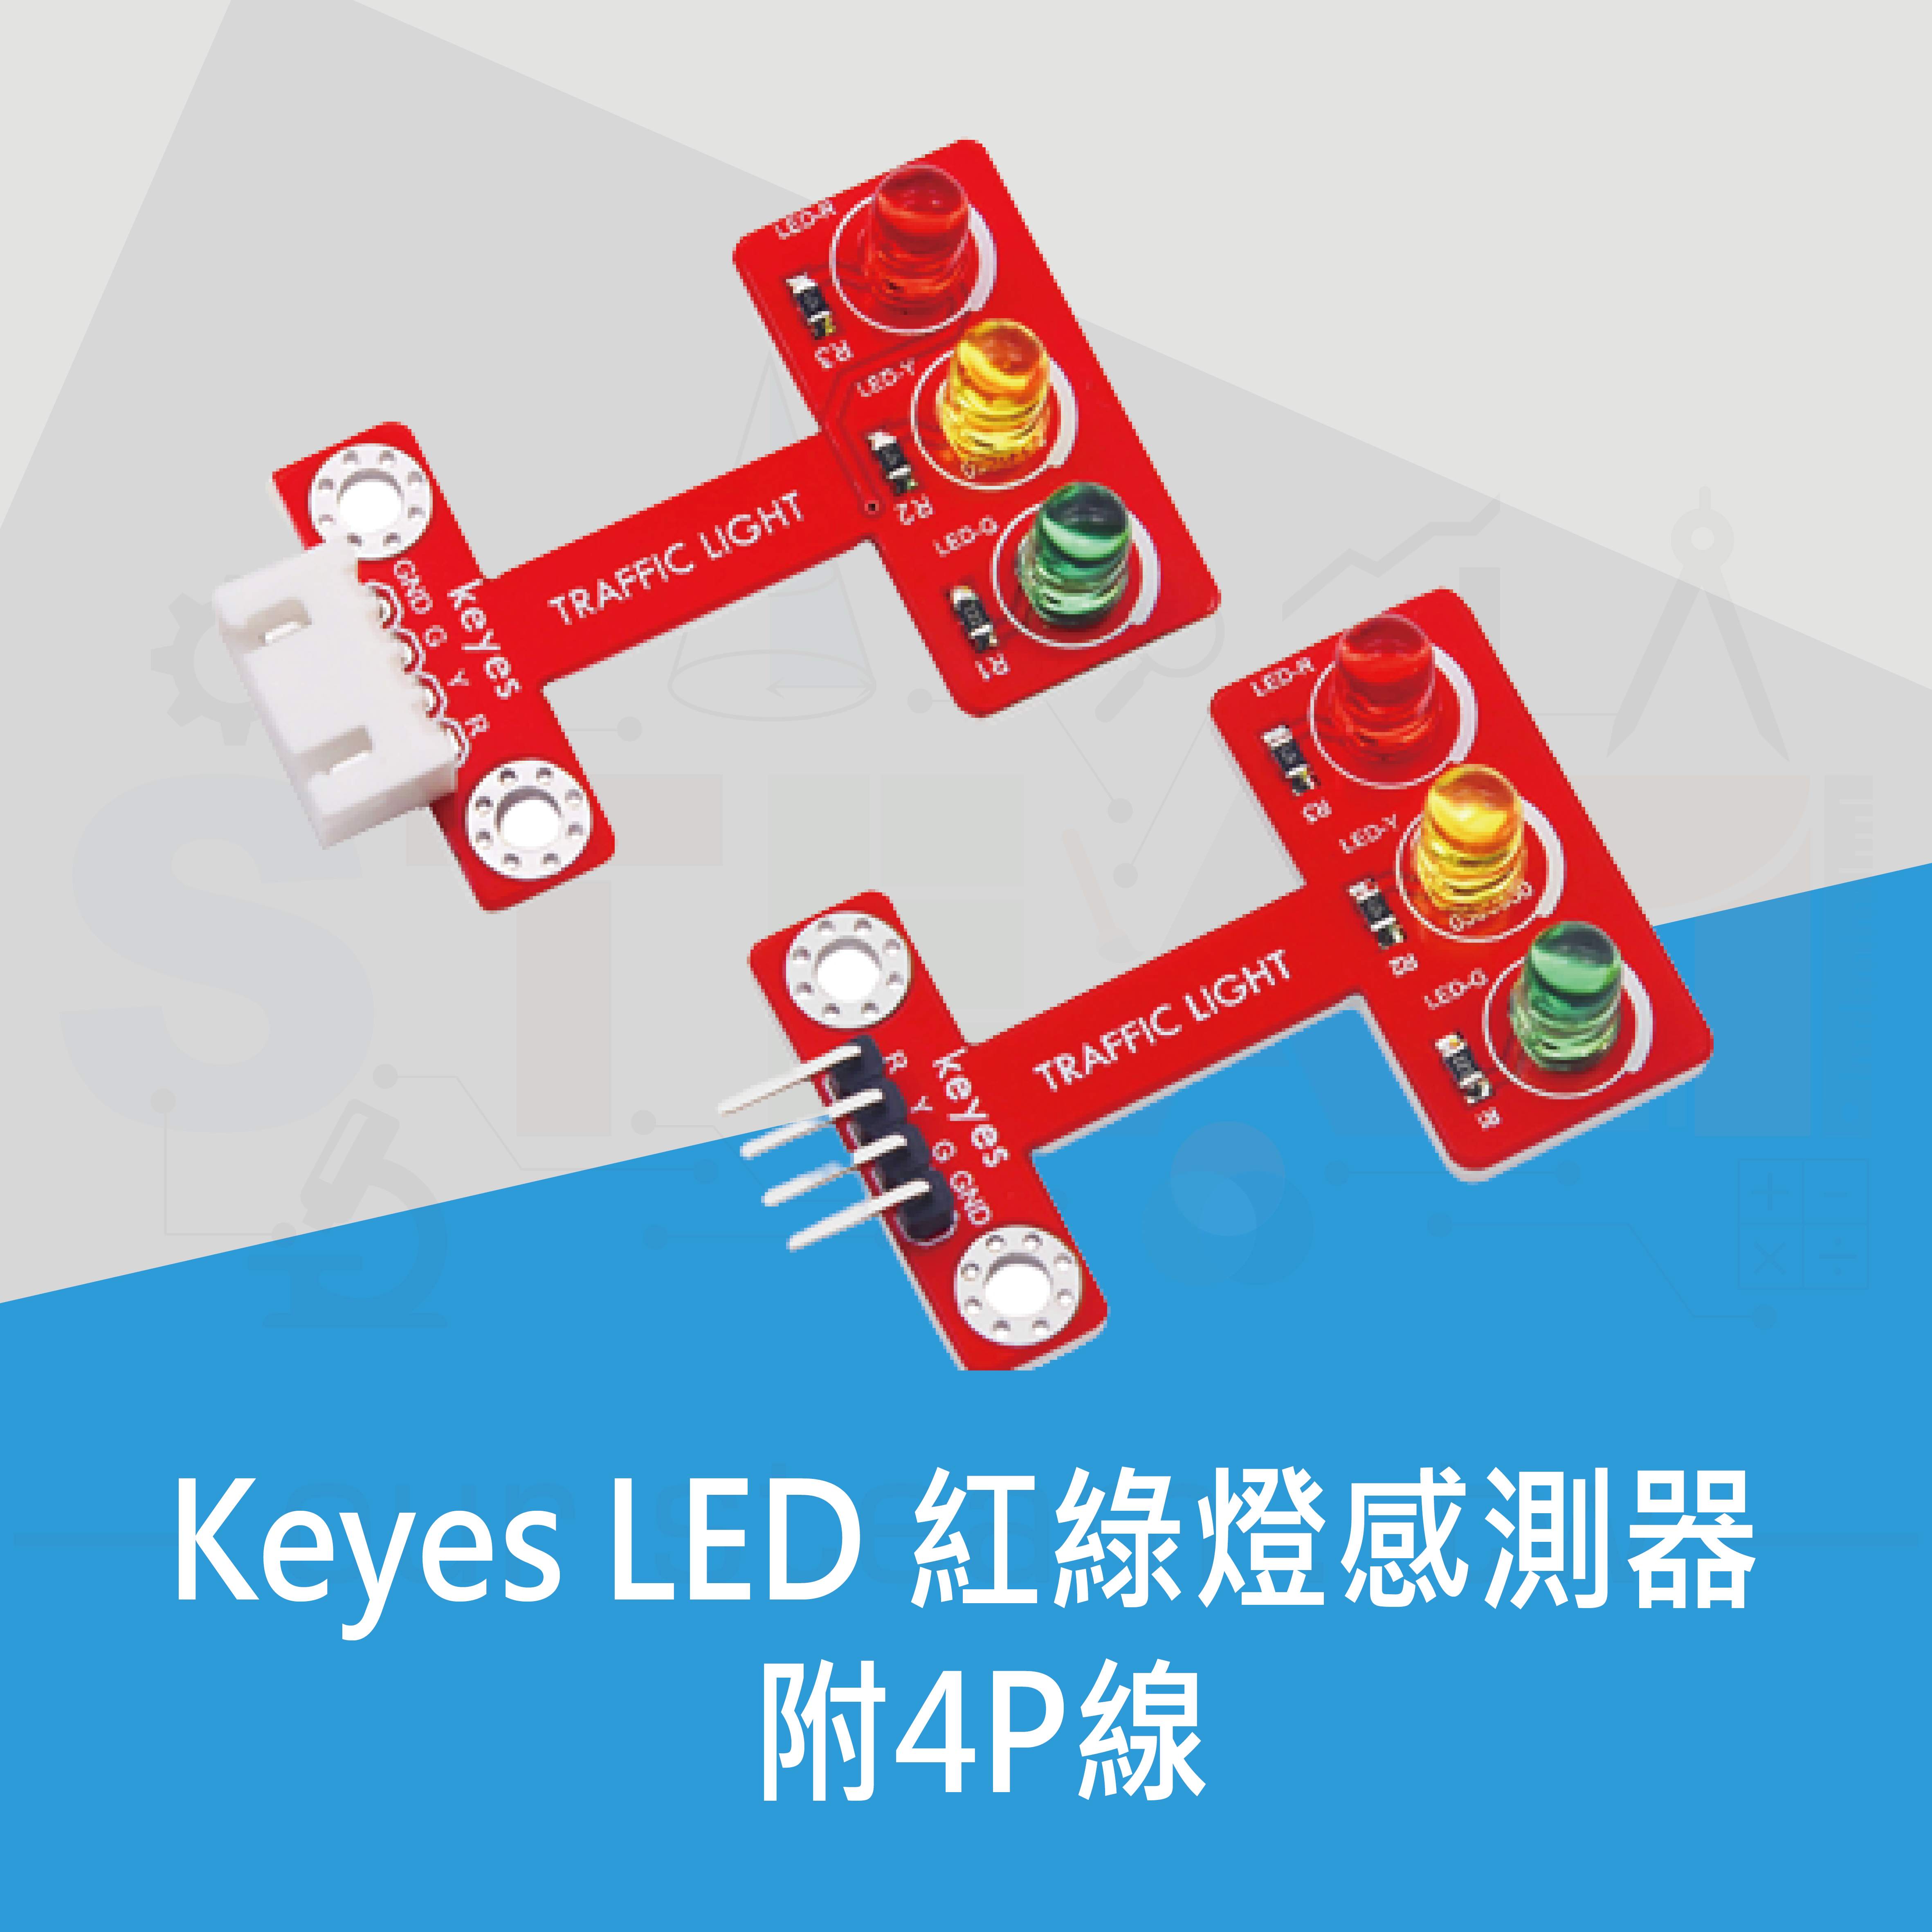 【KYS015】Keyes LED 紅綠燈感測器 附4P線